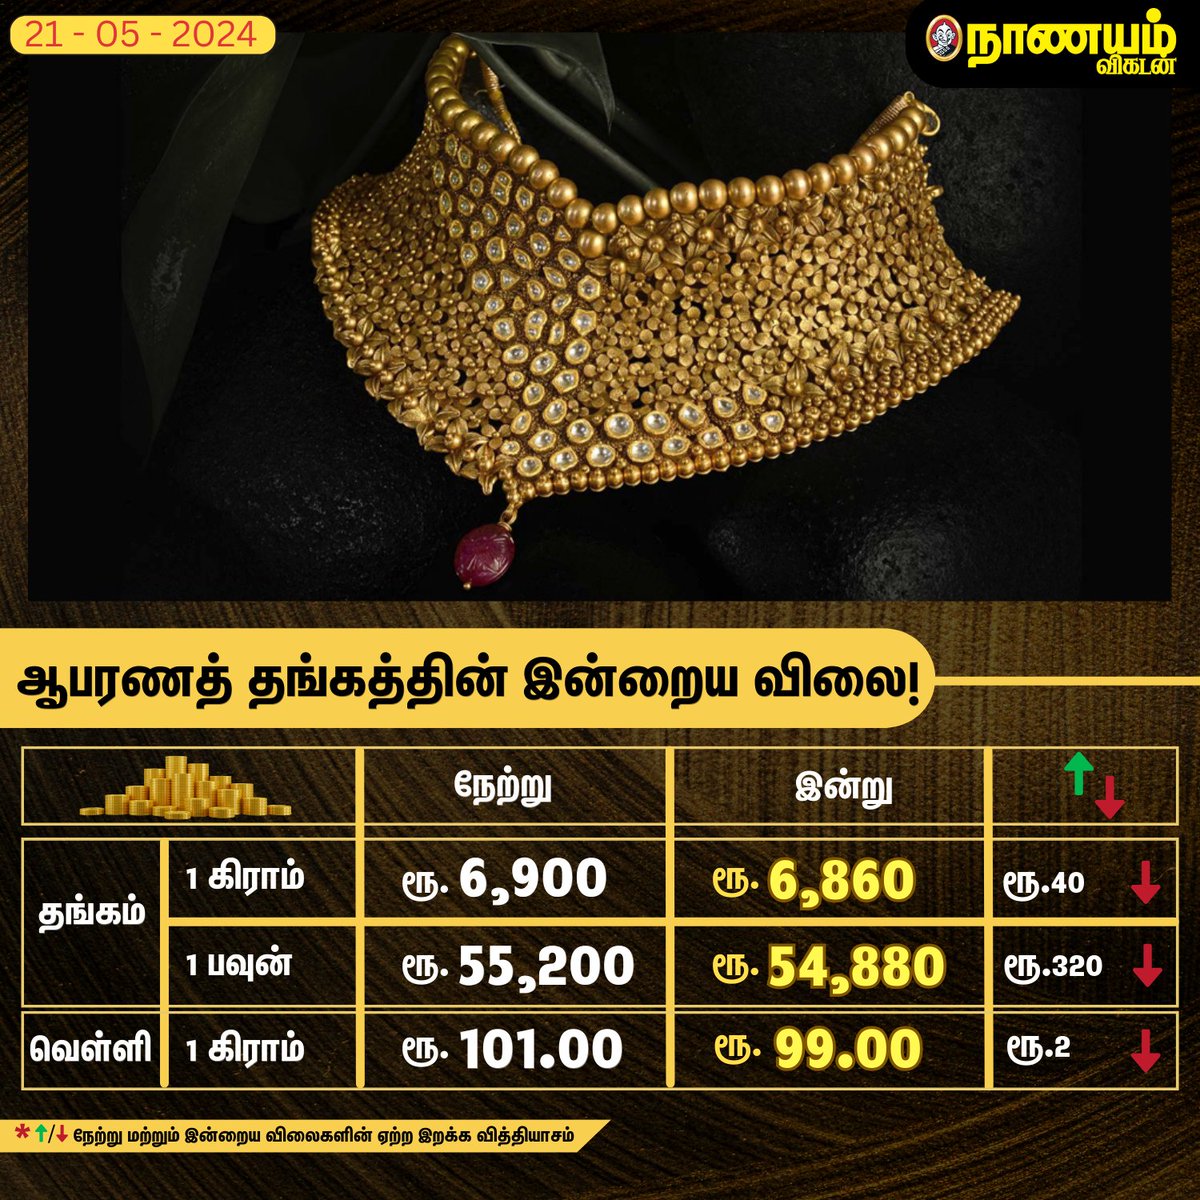 ஆபரணத் தங்கத்தின் இன்றைய விலை! 

#gold #goldjewellery #money #goldprice